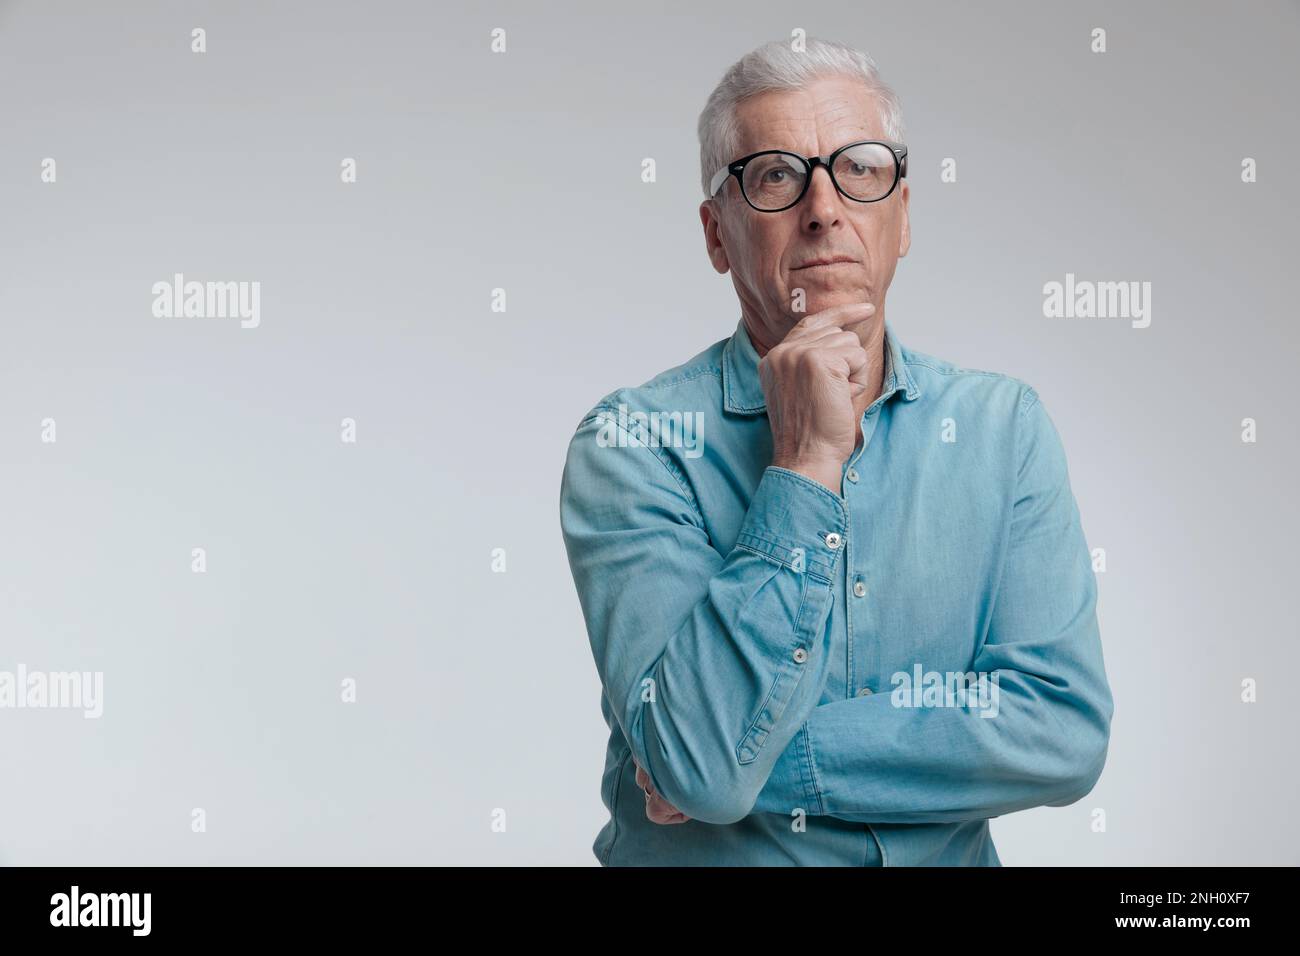 Porträt eines gutaussehenden Mannes in seinen 60s, der aufblickt und denkt, während er seine Arme vor grauem Hintergrund faltet Stockfoto